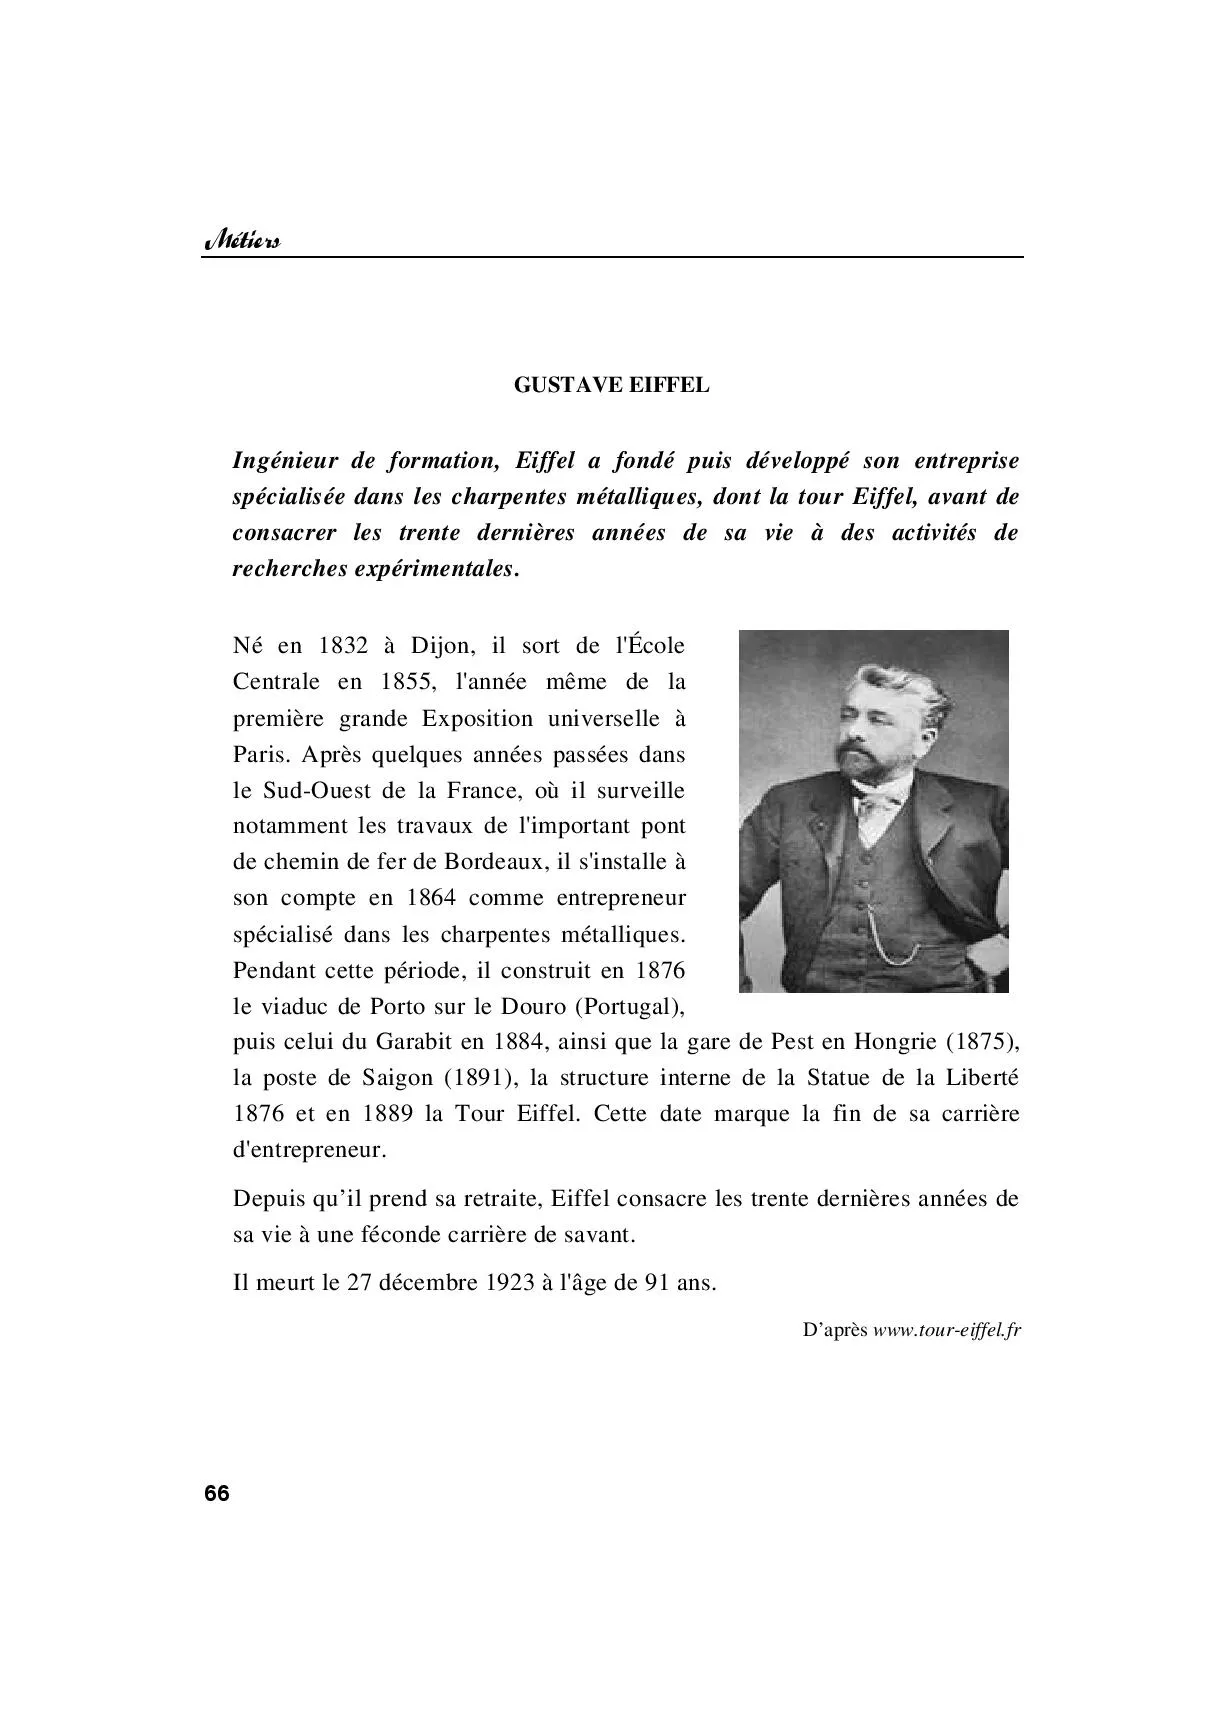 Leçon 6: Gustave Eiffel